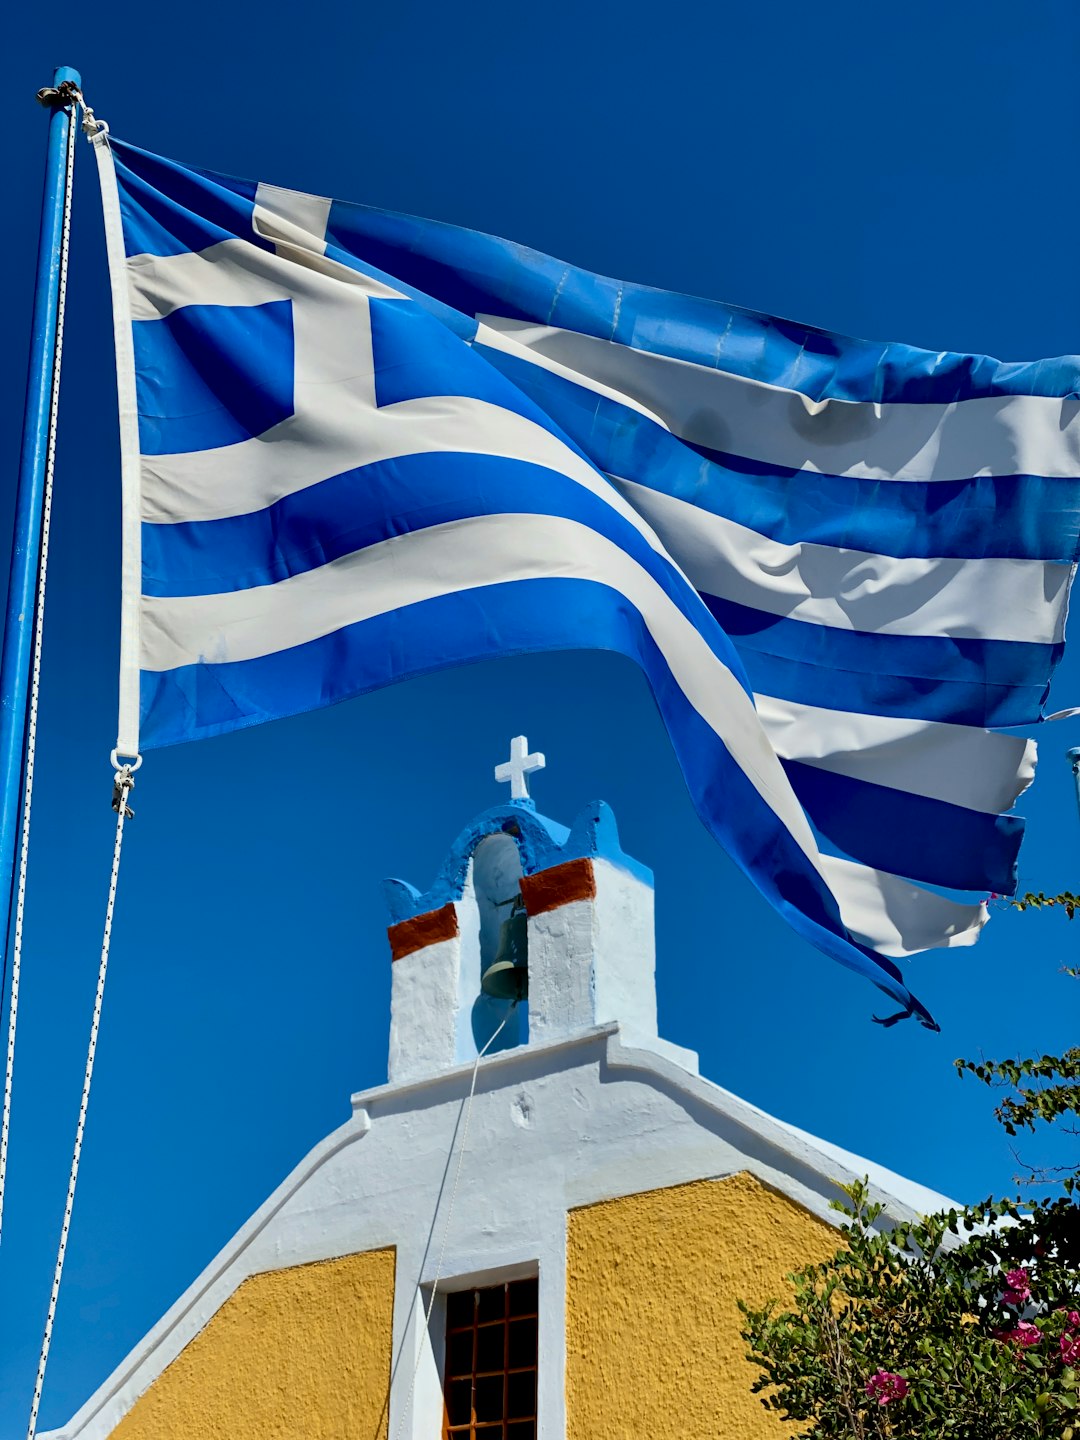 greek-flag-pictures-download-free-images-on-unsplash